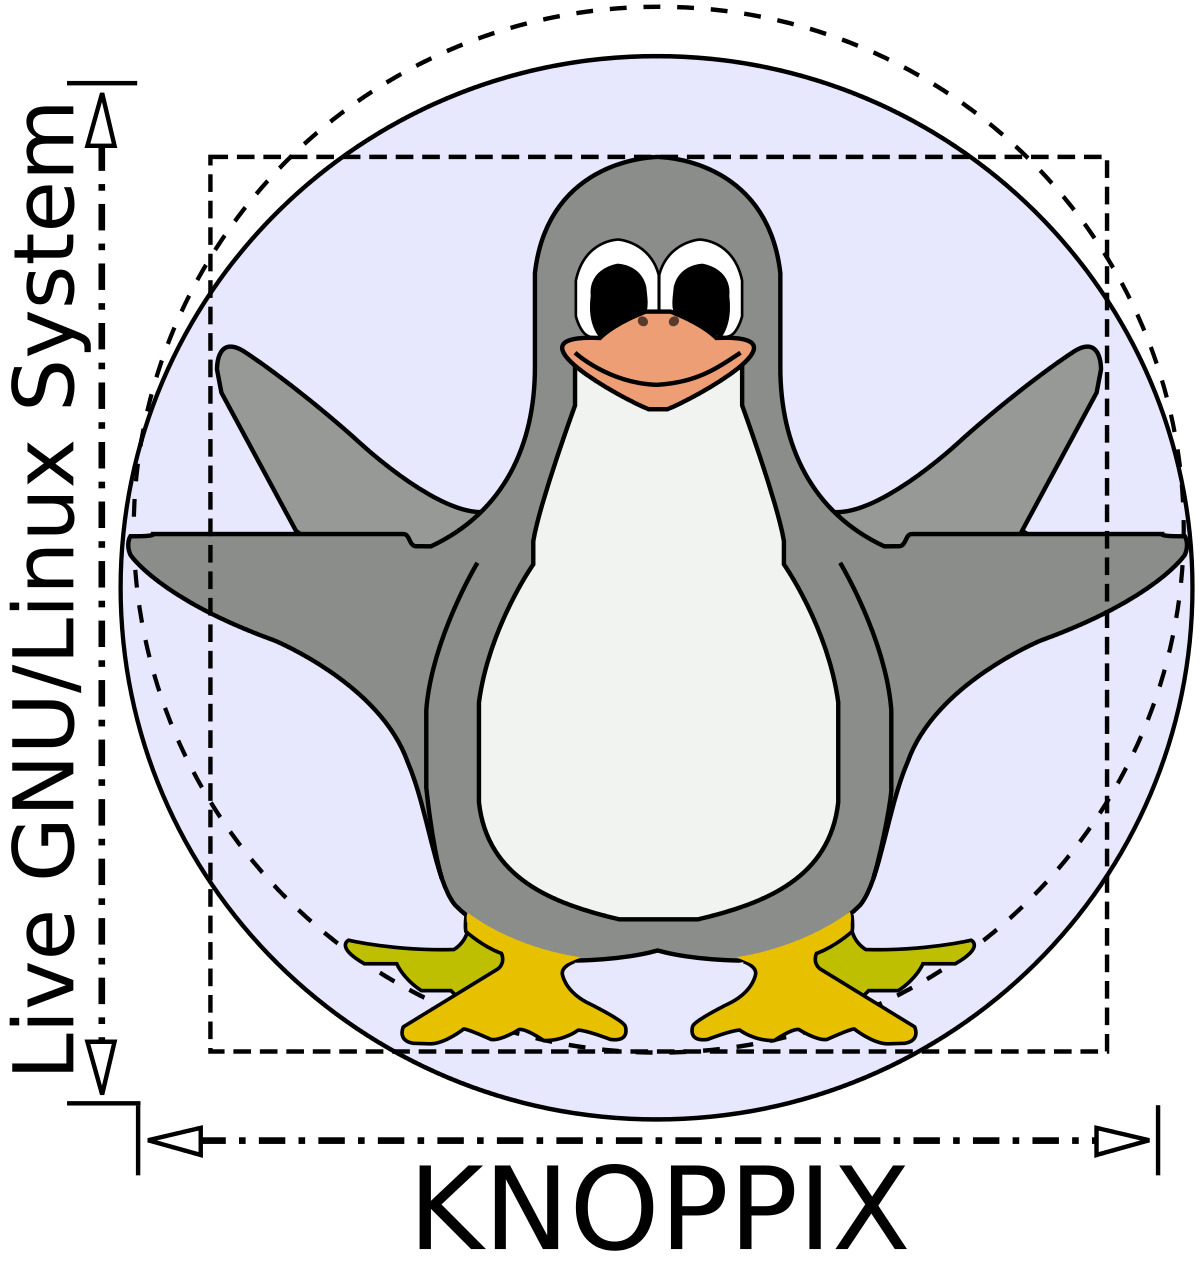 Knoppix Linux OS v8.6.1 32 GB USB  - The Original Live Operating System 